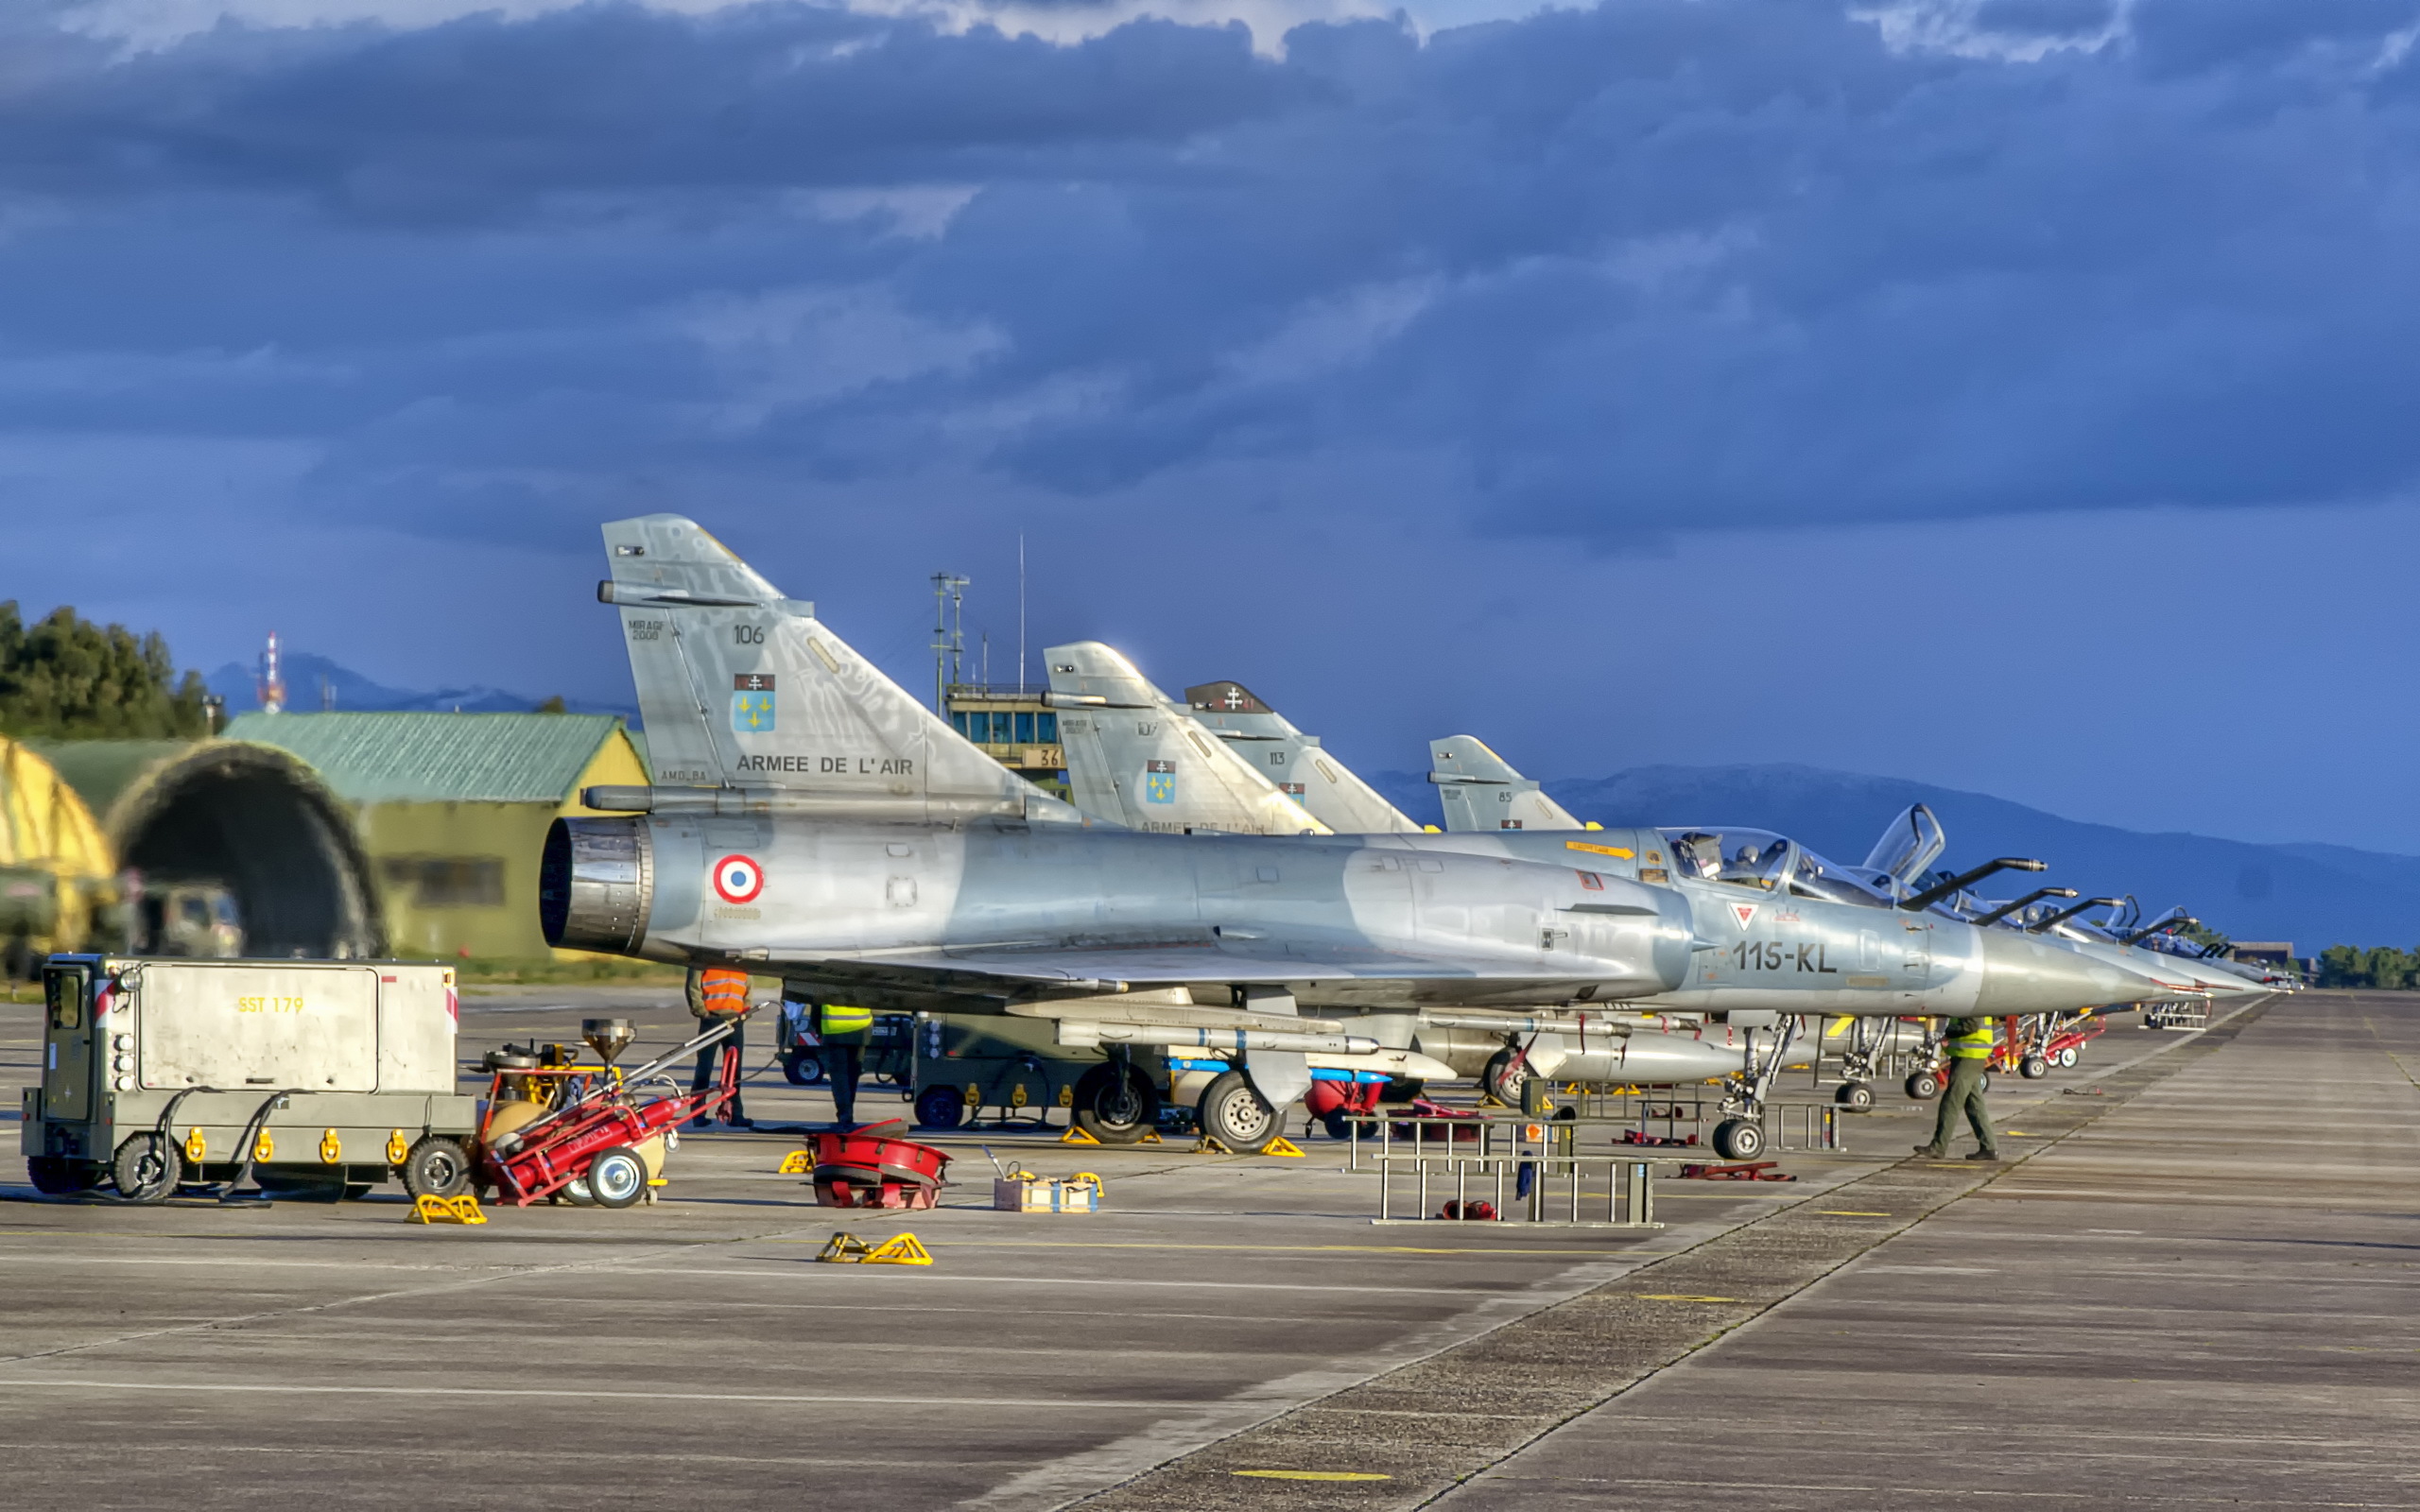 dassault mirage 2000, military, aircraft, jet fighter, warplane, jet fighters